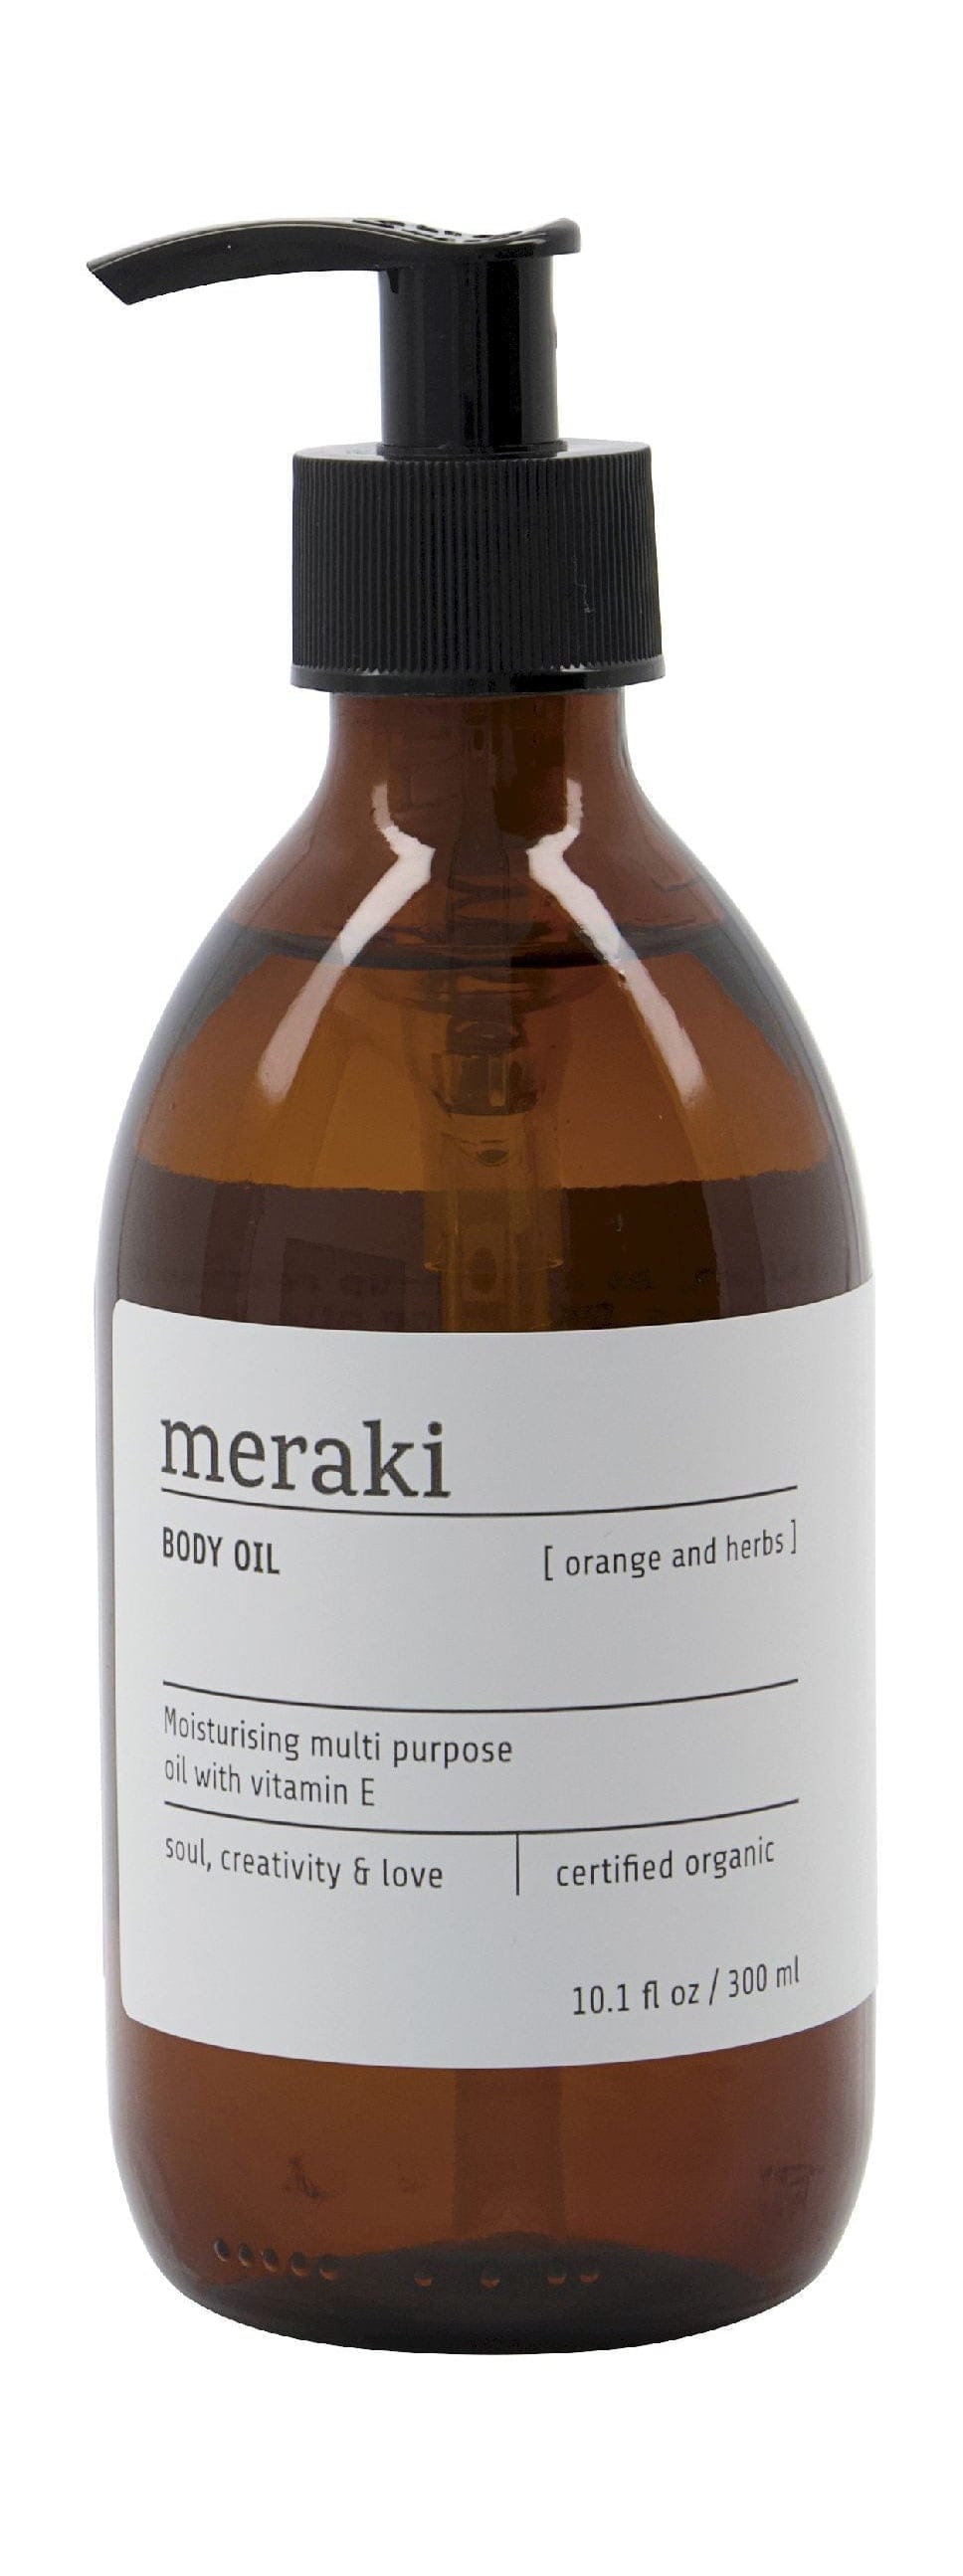 Meraki Body Oil 300 ml, Orange & Herbs